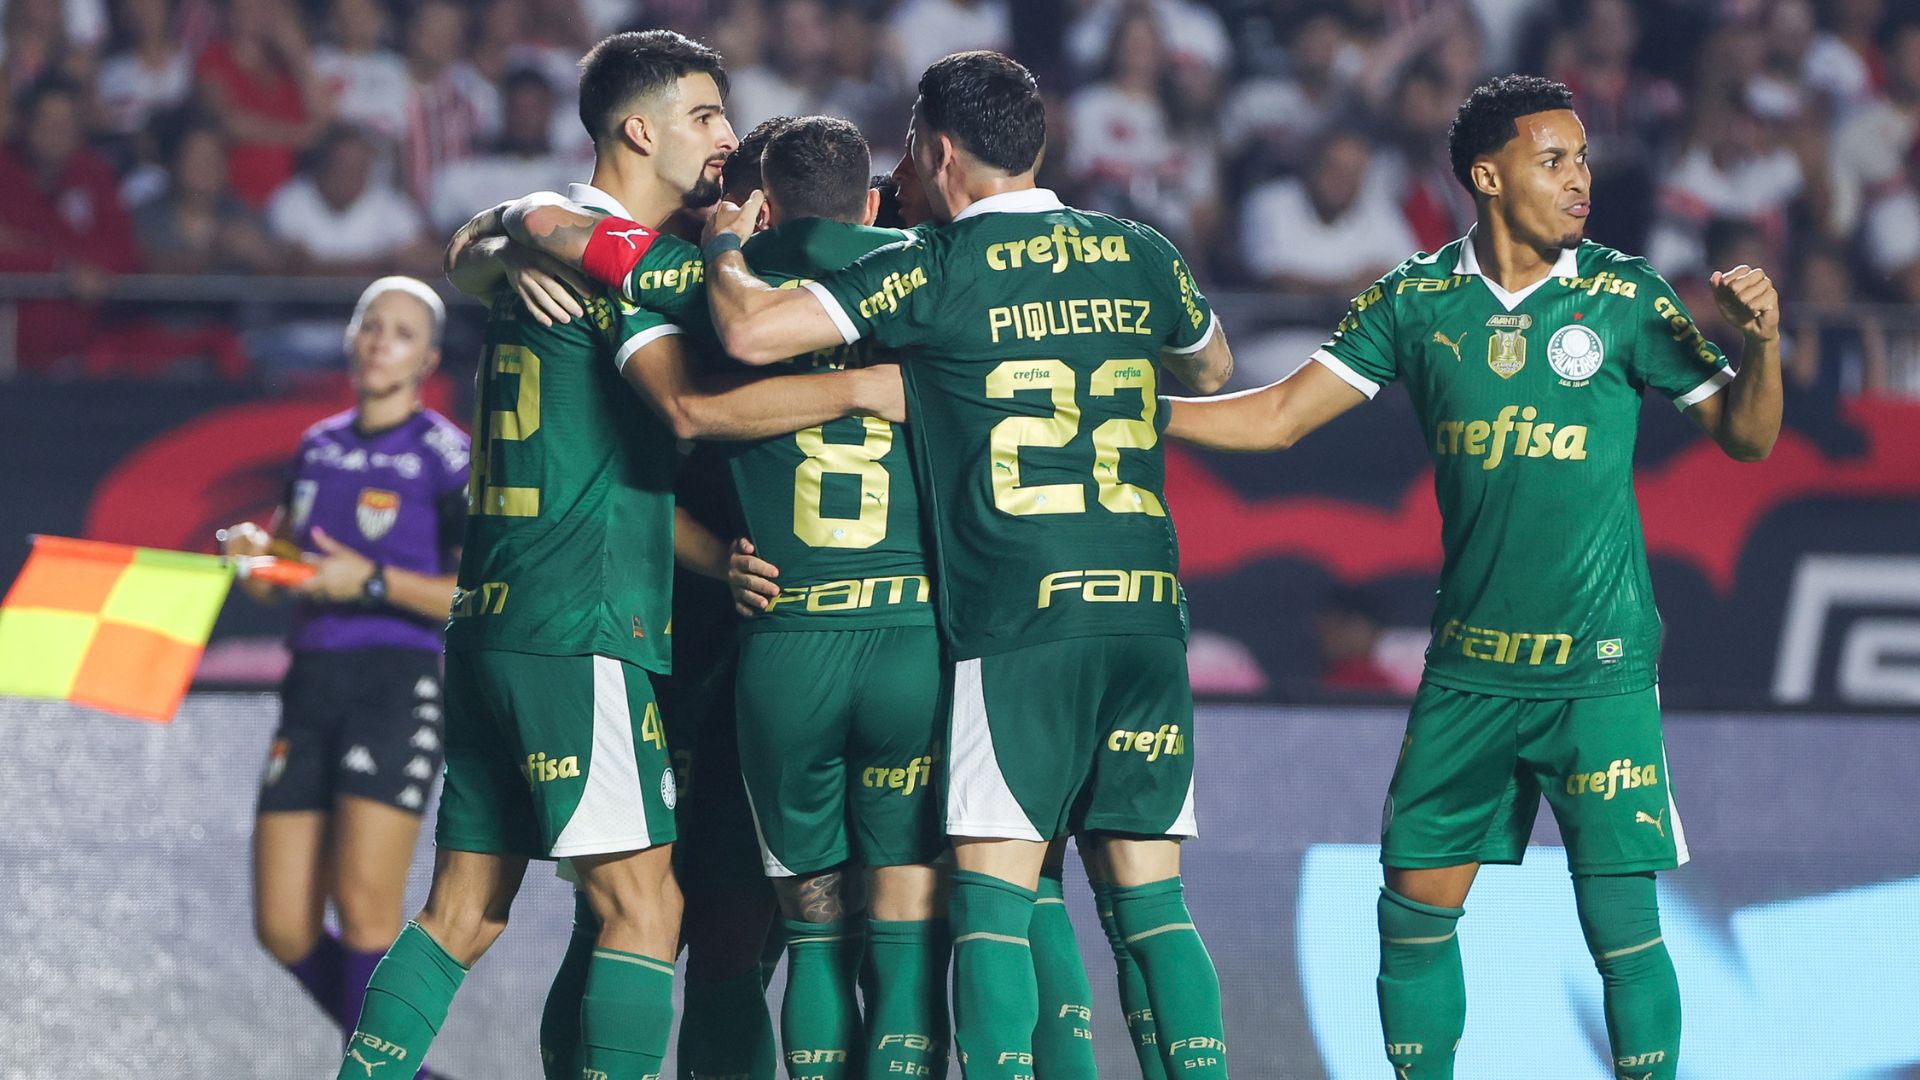 Palmeiras is the favorite against Paulistão, according to Rivaldo and Betfair